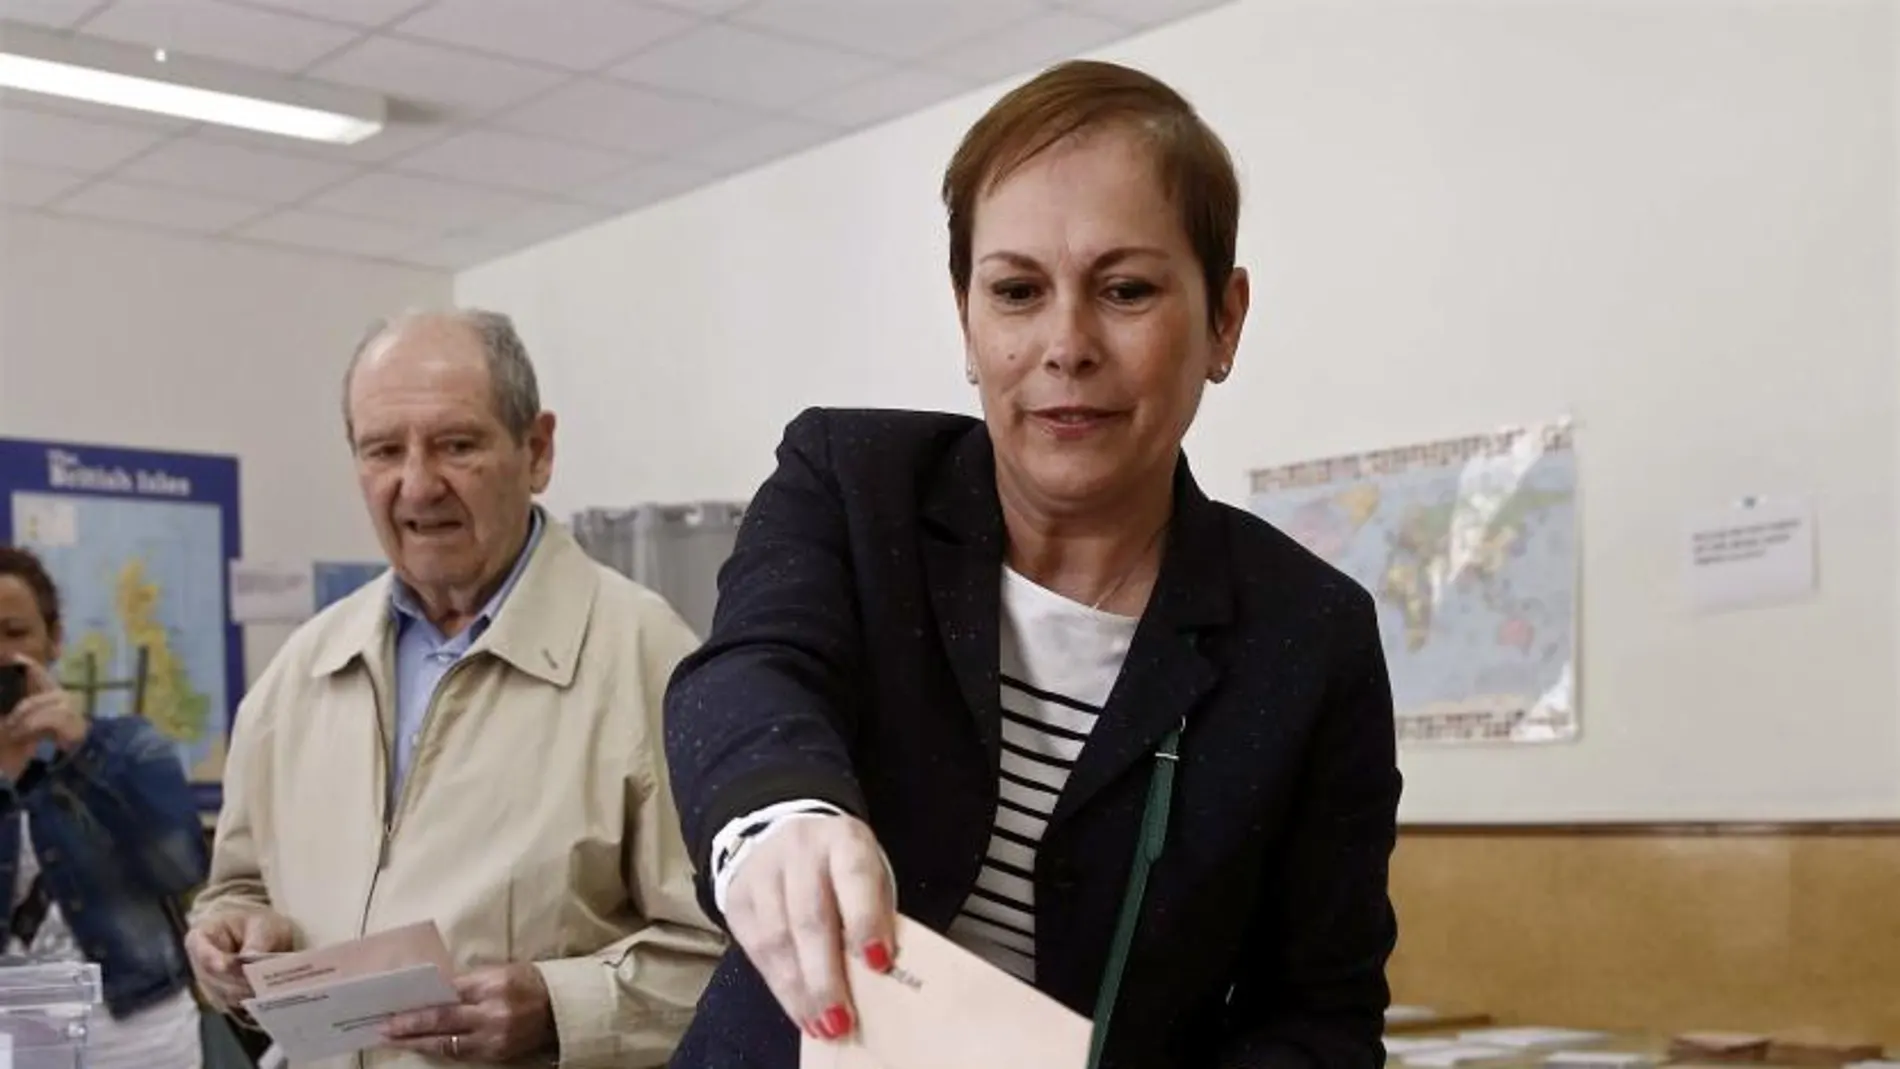 La presidenta del Gobierno de Navarra ,Uxue Barkos, deposita su voto